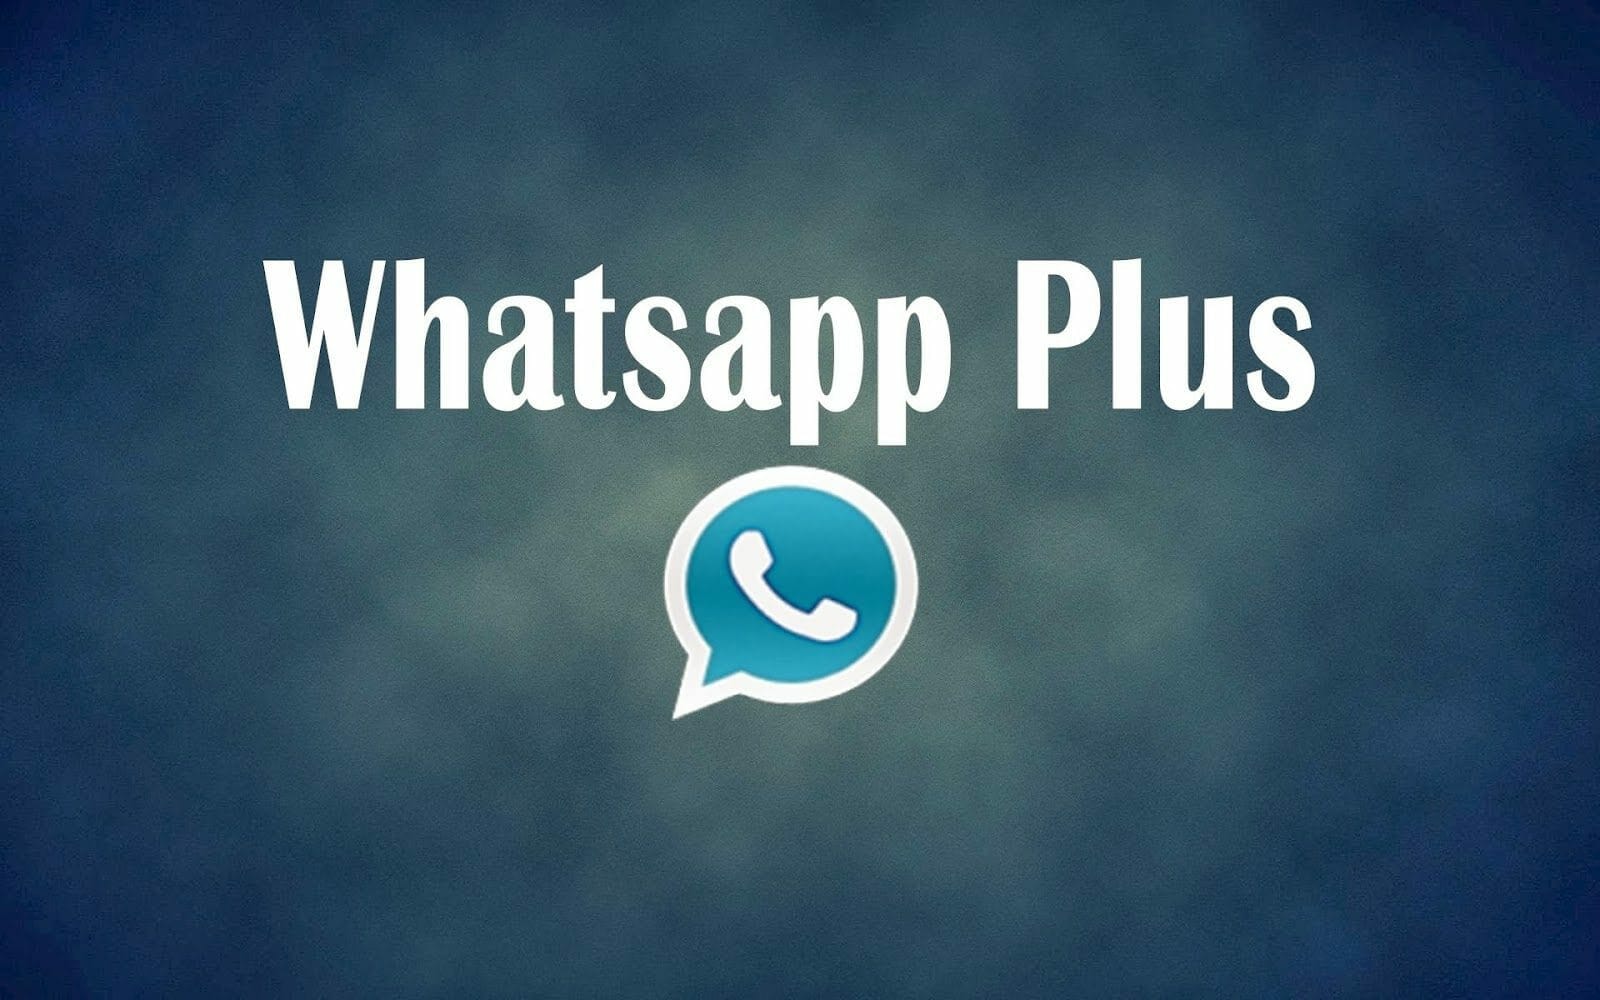 whatsapp plus ios free